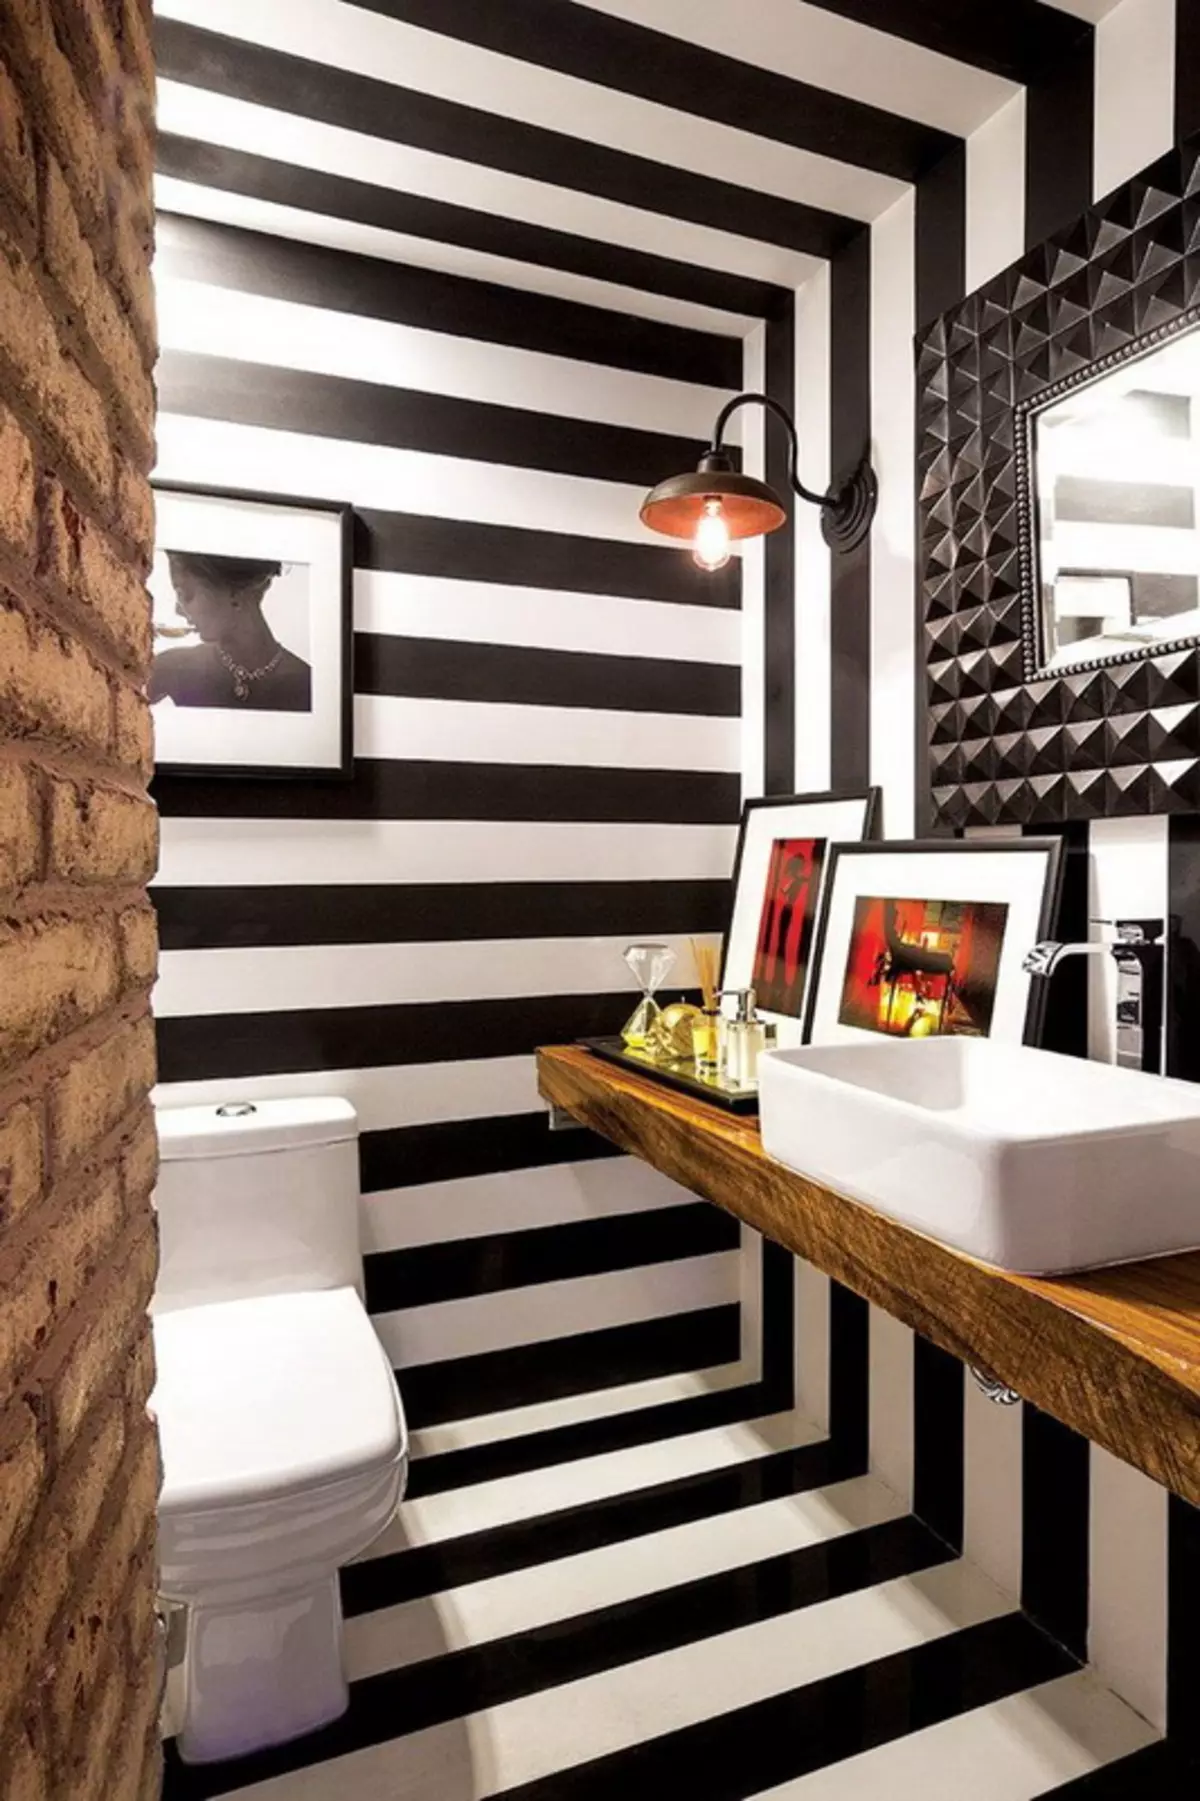 WC preto (67 fotos): Projeto de vaso sanitário em cores preto e branco, seleção de um banheiro de cor escura em um apartamento, acabamento com telhas pretas e vermelhas 10501_32